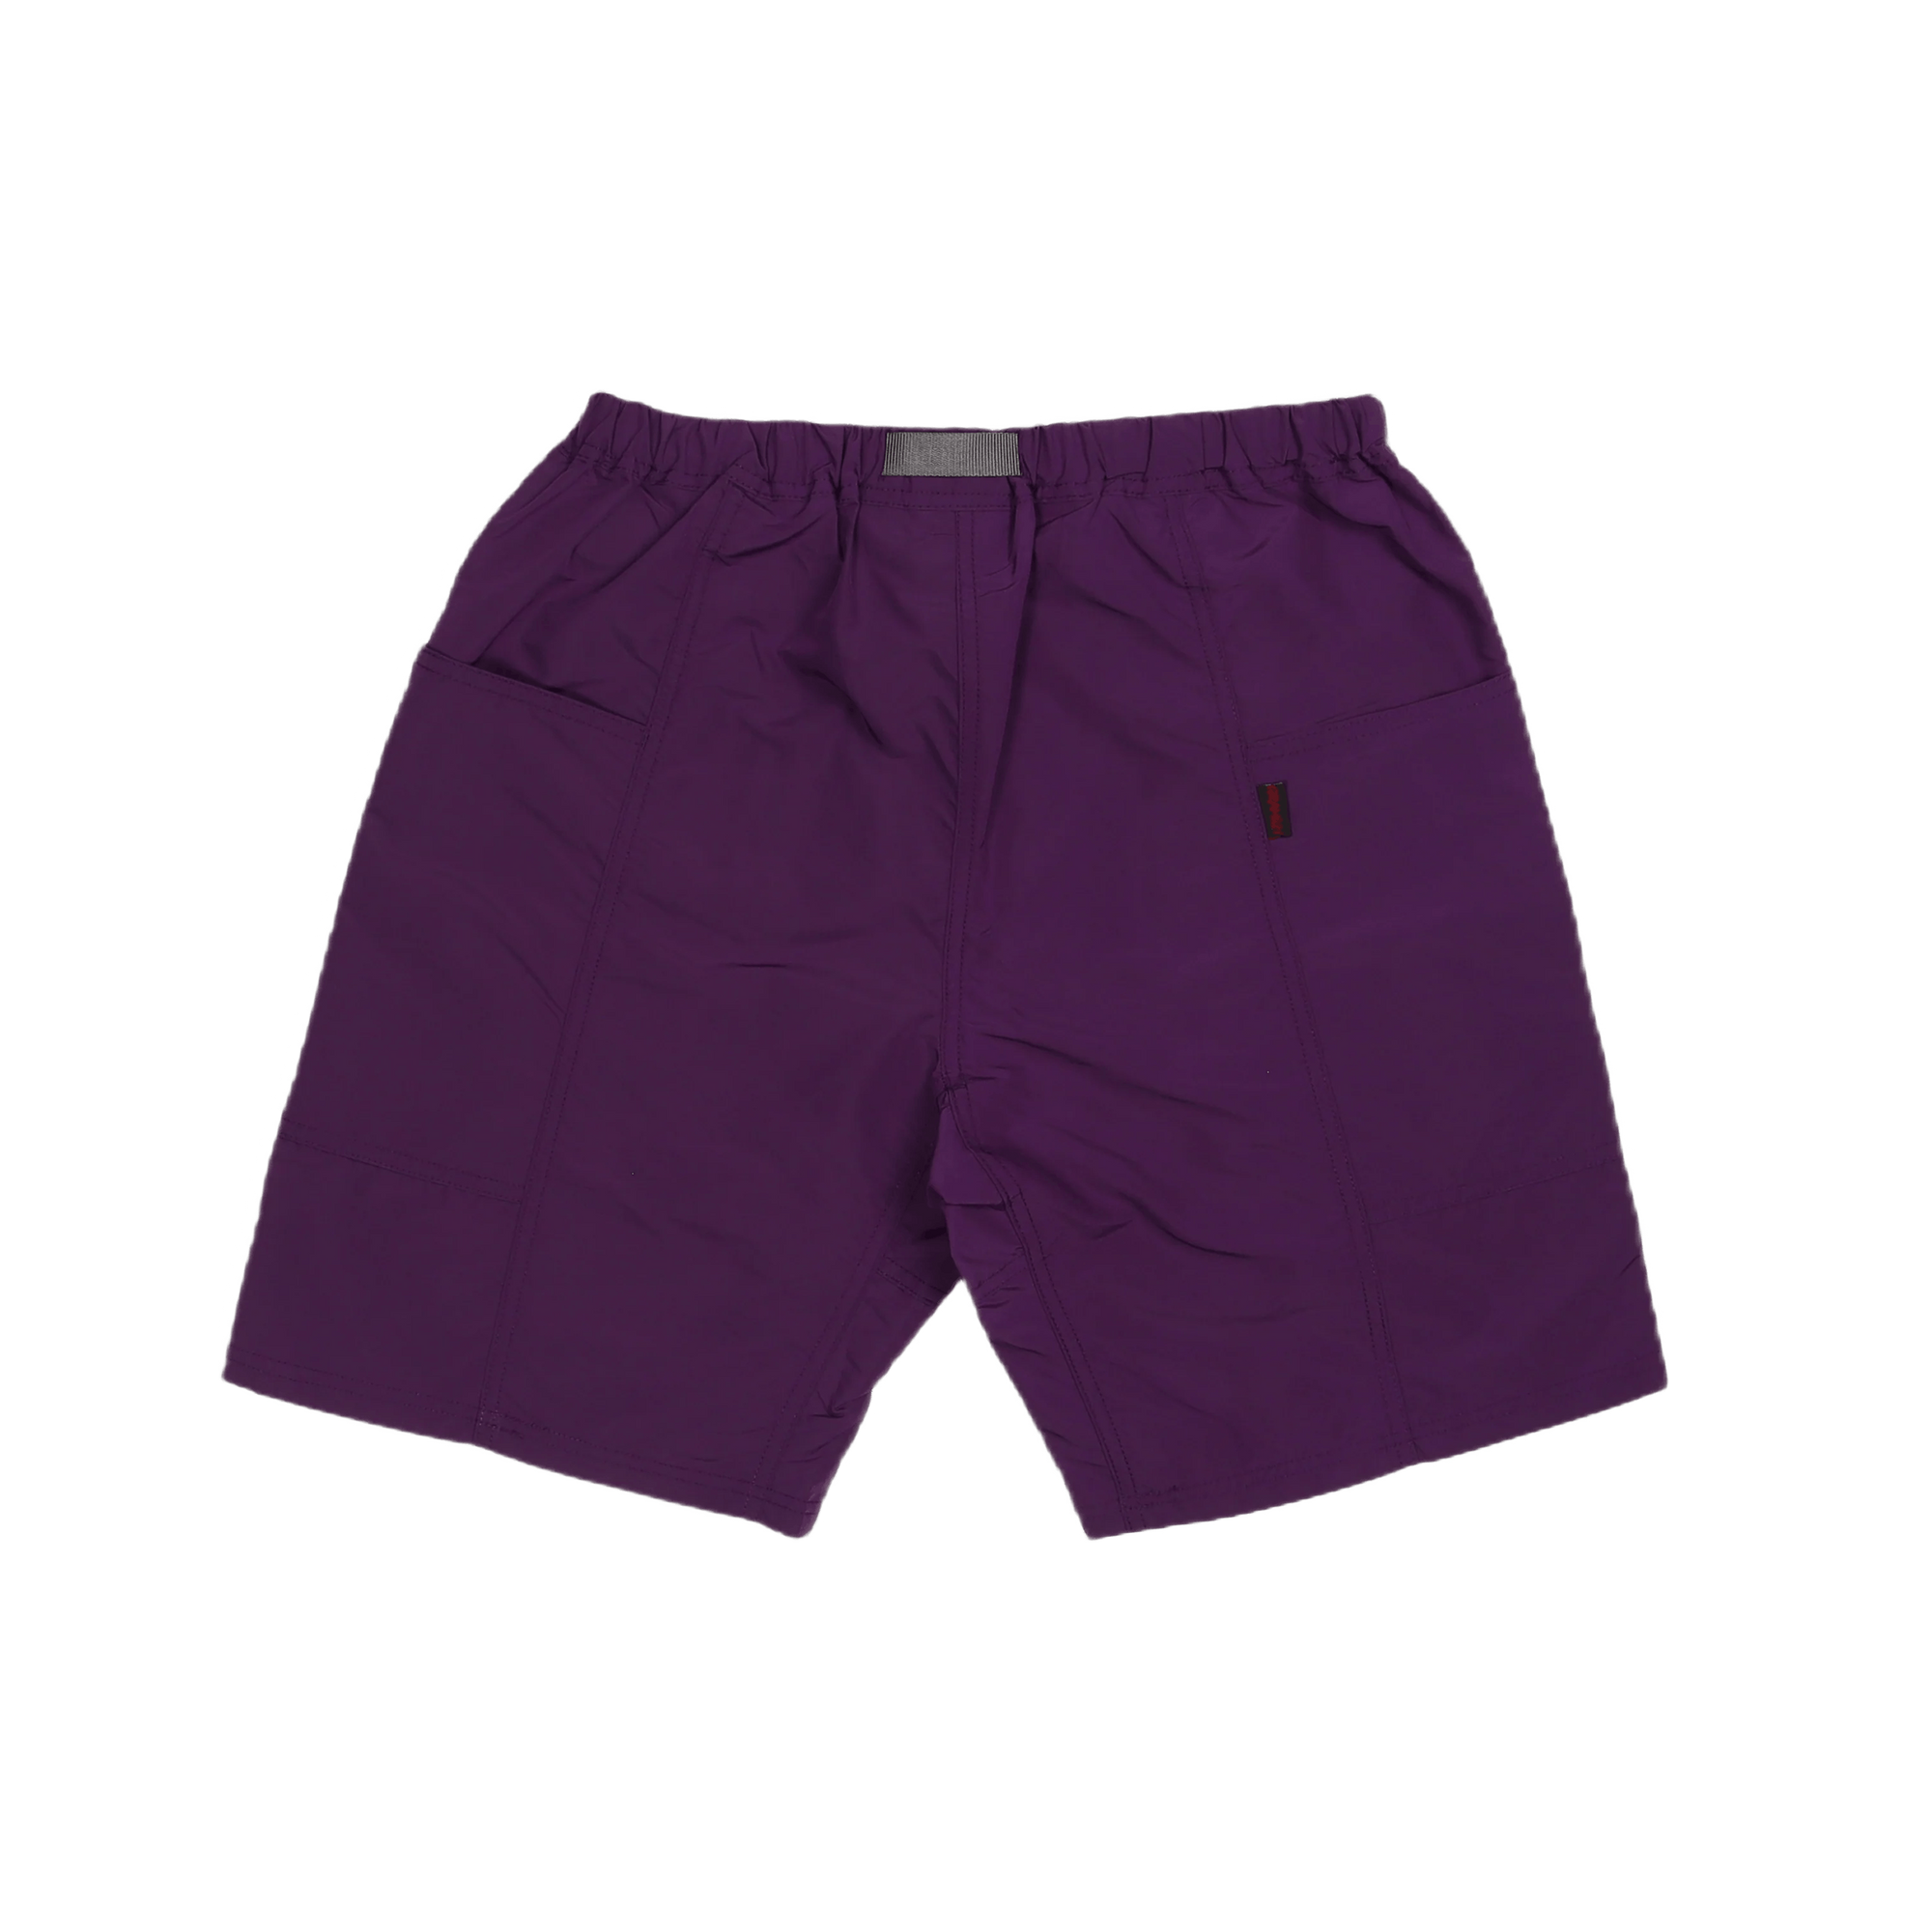 Shell Gear Short Purple